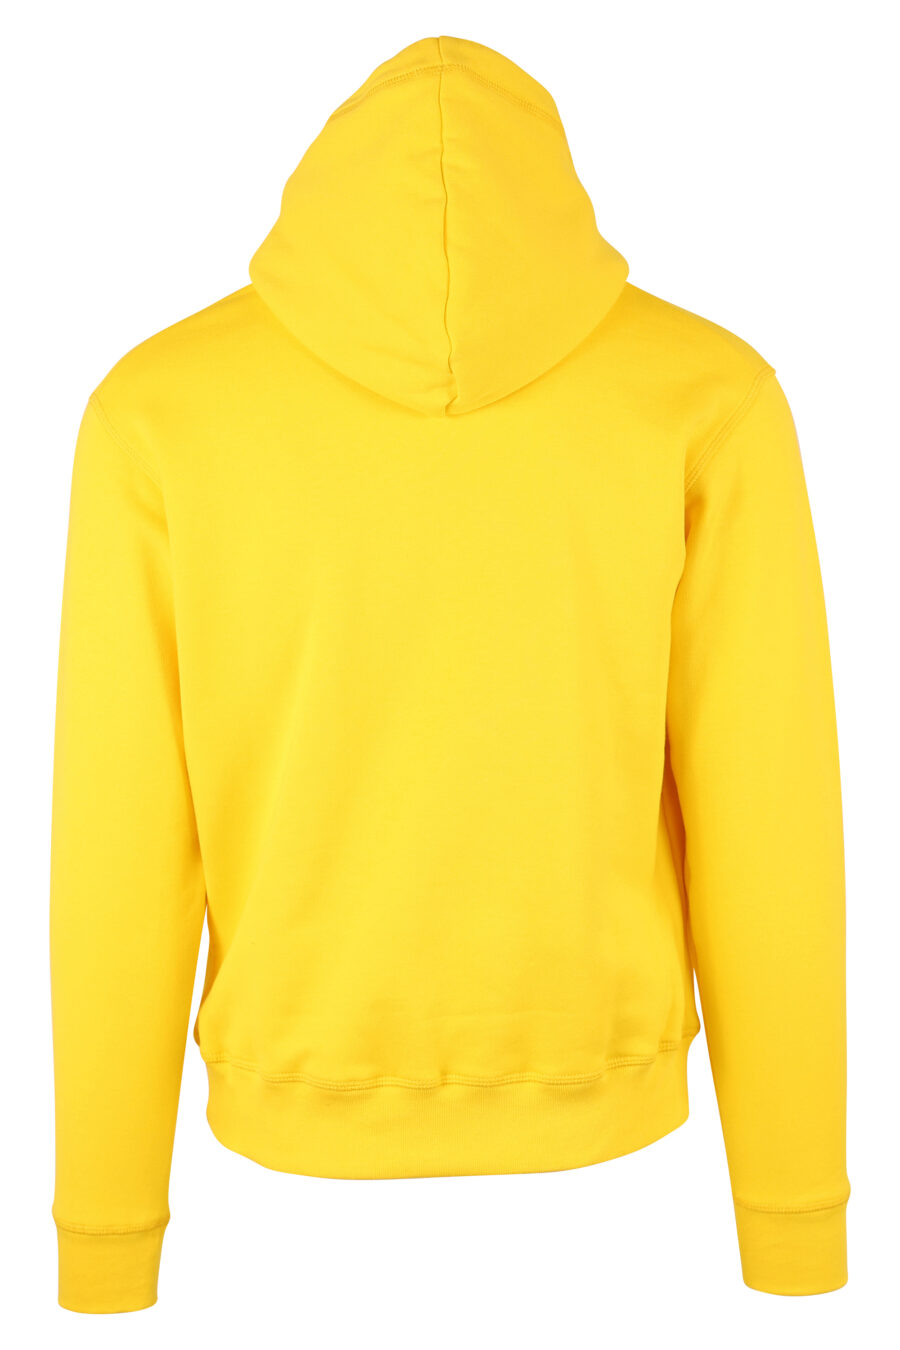 Sudadera amarilla con capucha y doble logo "icon" - IMG 9737